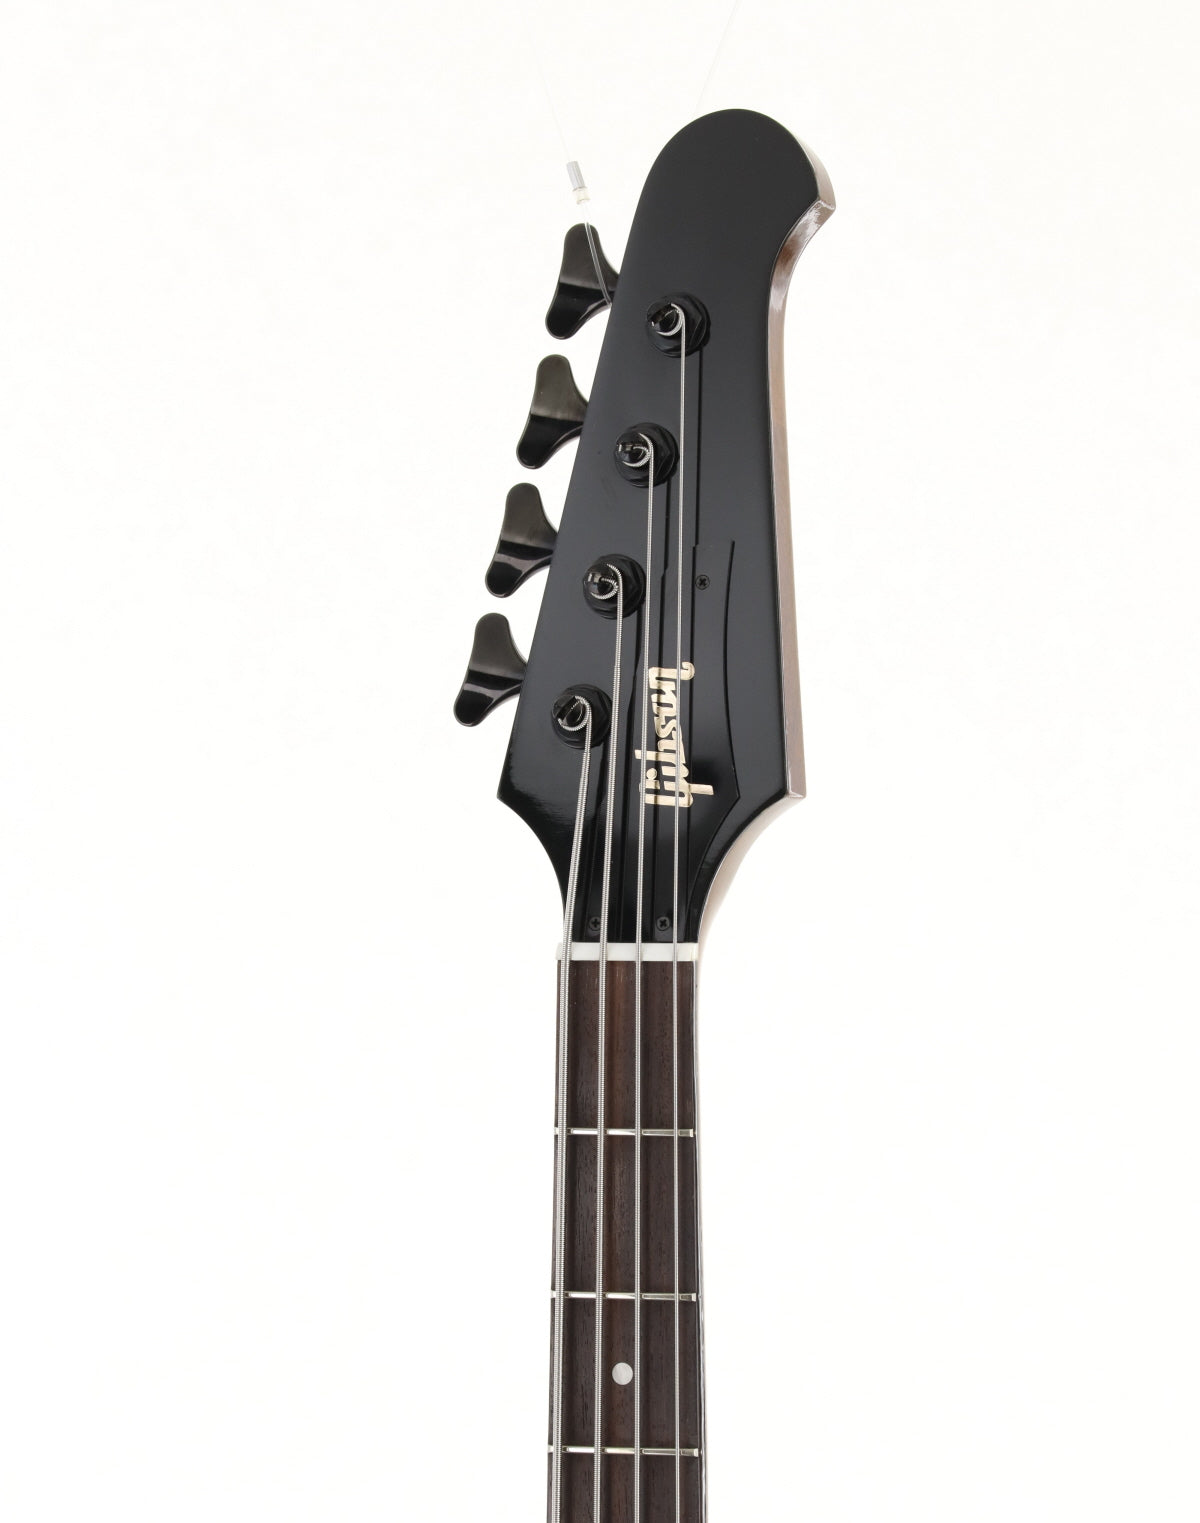 [SN 132120489] USED Gibson / Thunderbird Bass Non Reverse Sunburst 2012 [09]